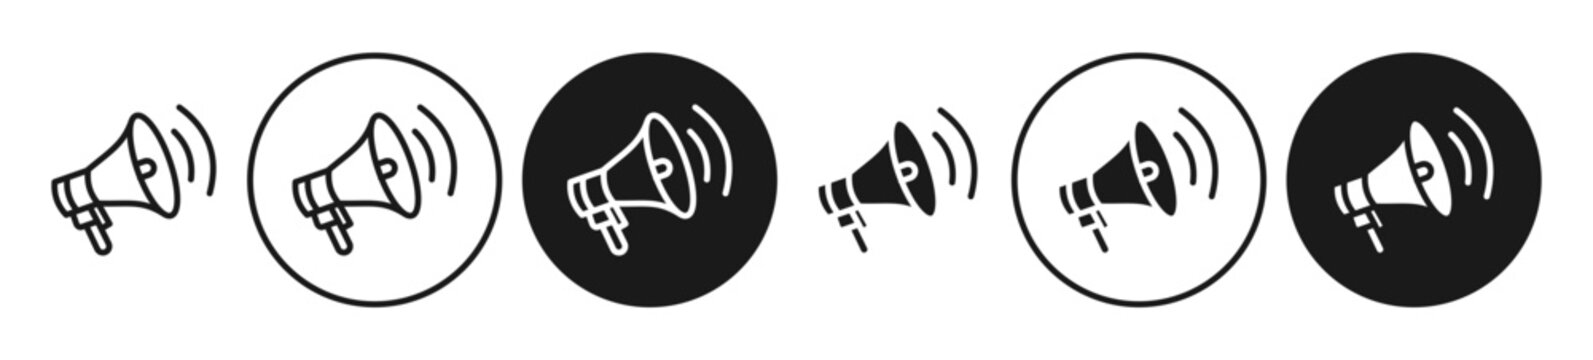 loudspeaker icon set. announcement speaker vector symbol. hand hailer sign. speak loudhailer symbol. megaphone news announce pictogram. bullhorn line sign.